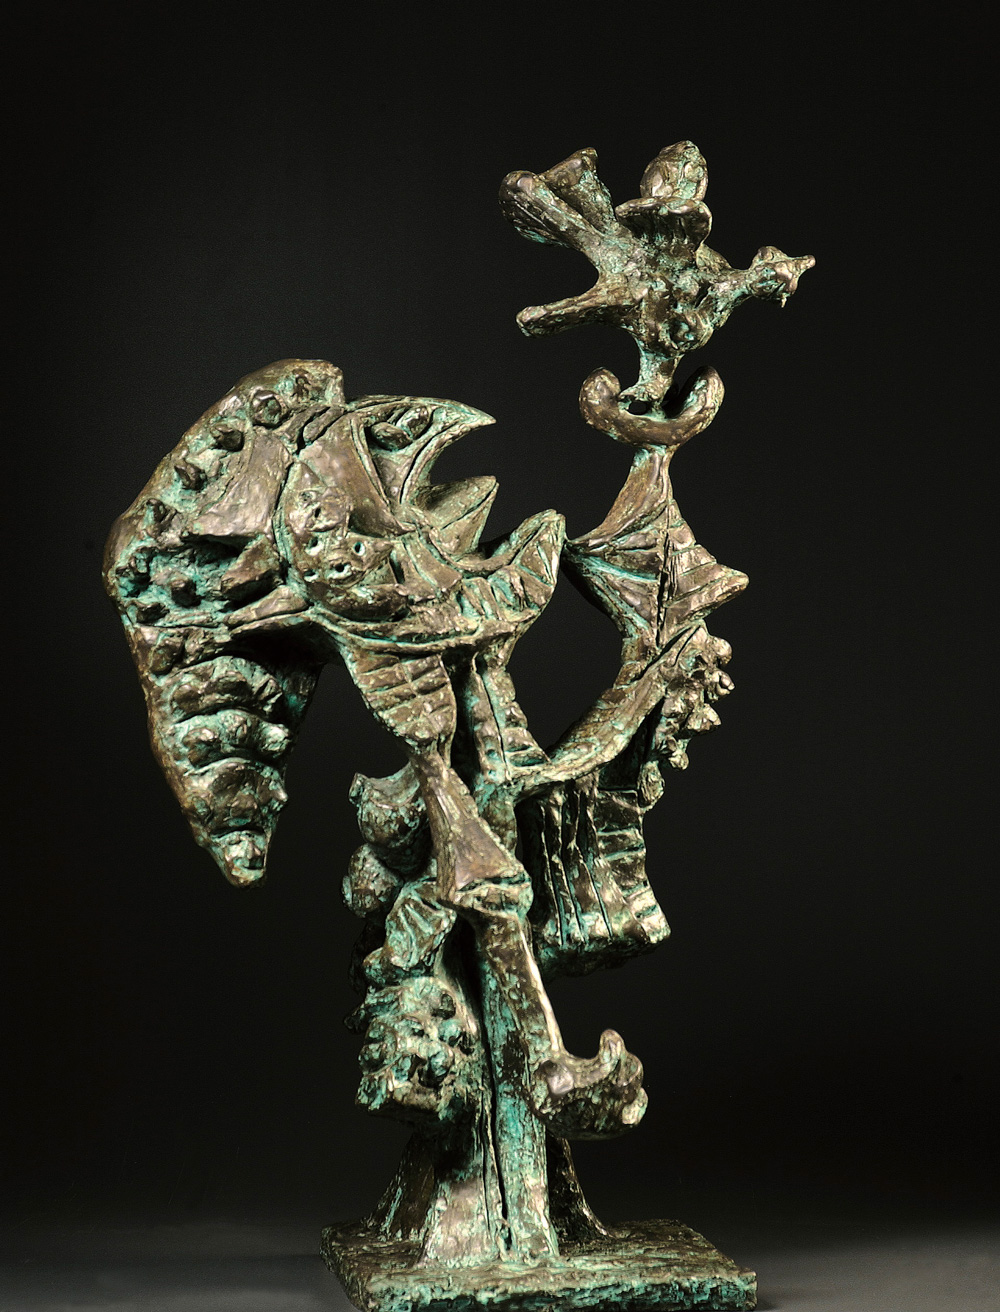 <b>ATRAPADORA</b>, 1990 <br> Bronze | Bronce<br> 29.13 x 17.71 x 13.78 in | 74 x 45 x 35 cm 